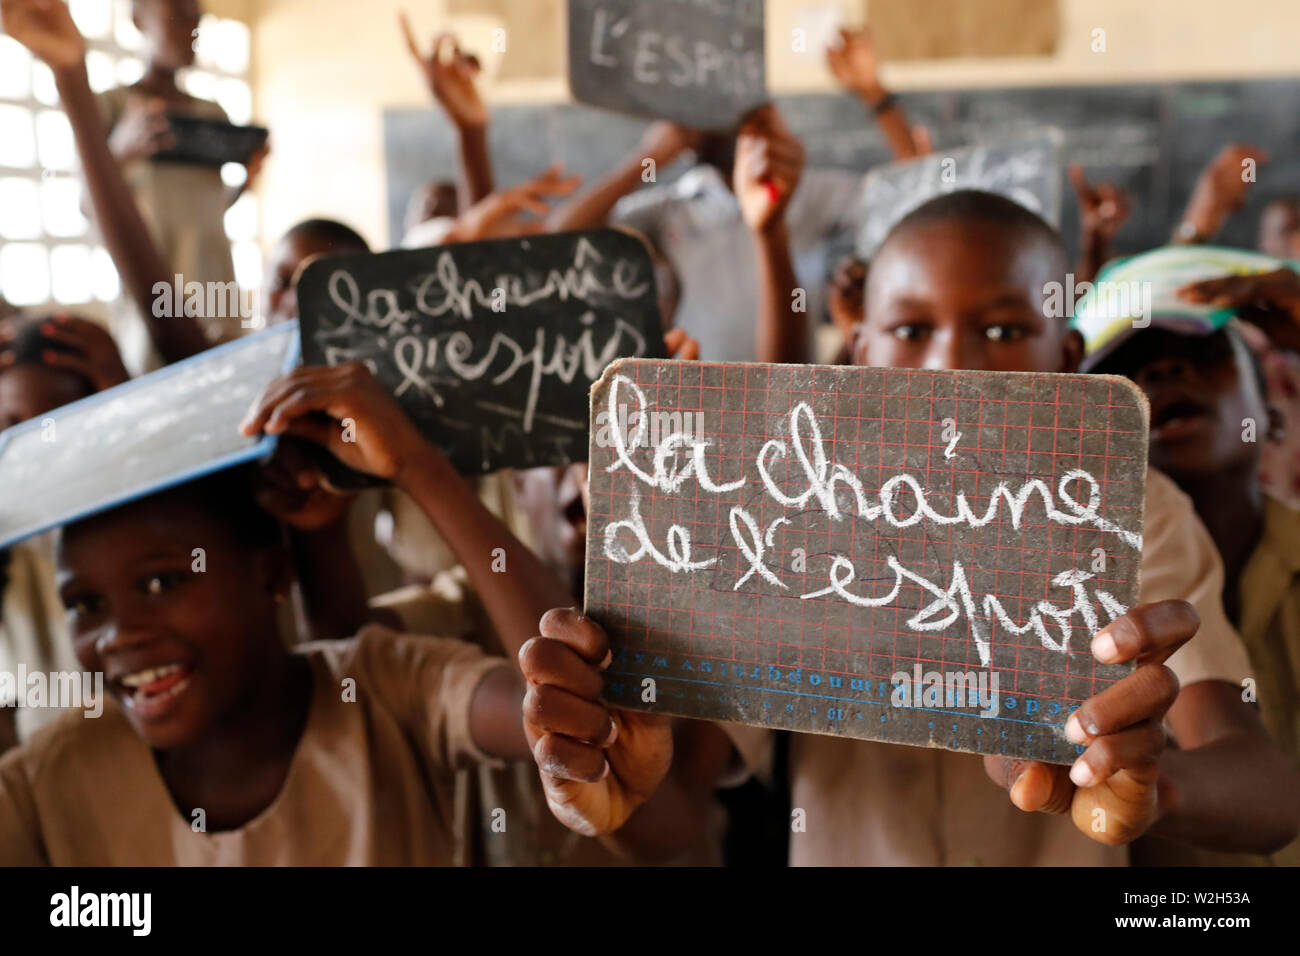 L'école primaire de l'Afrique. Enfants parrainés par l'ONG française : la chaîne de l'Espoir. La chaîne de l'espoir ( ). Lome. Le Togo. Banque D'Images